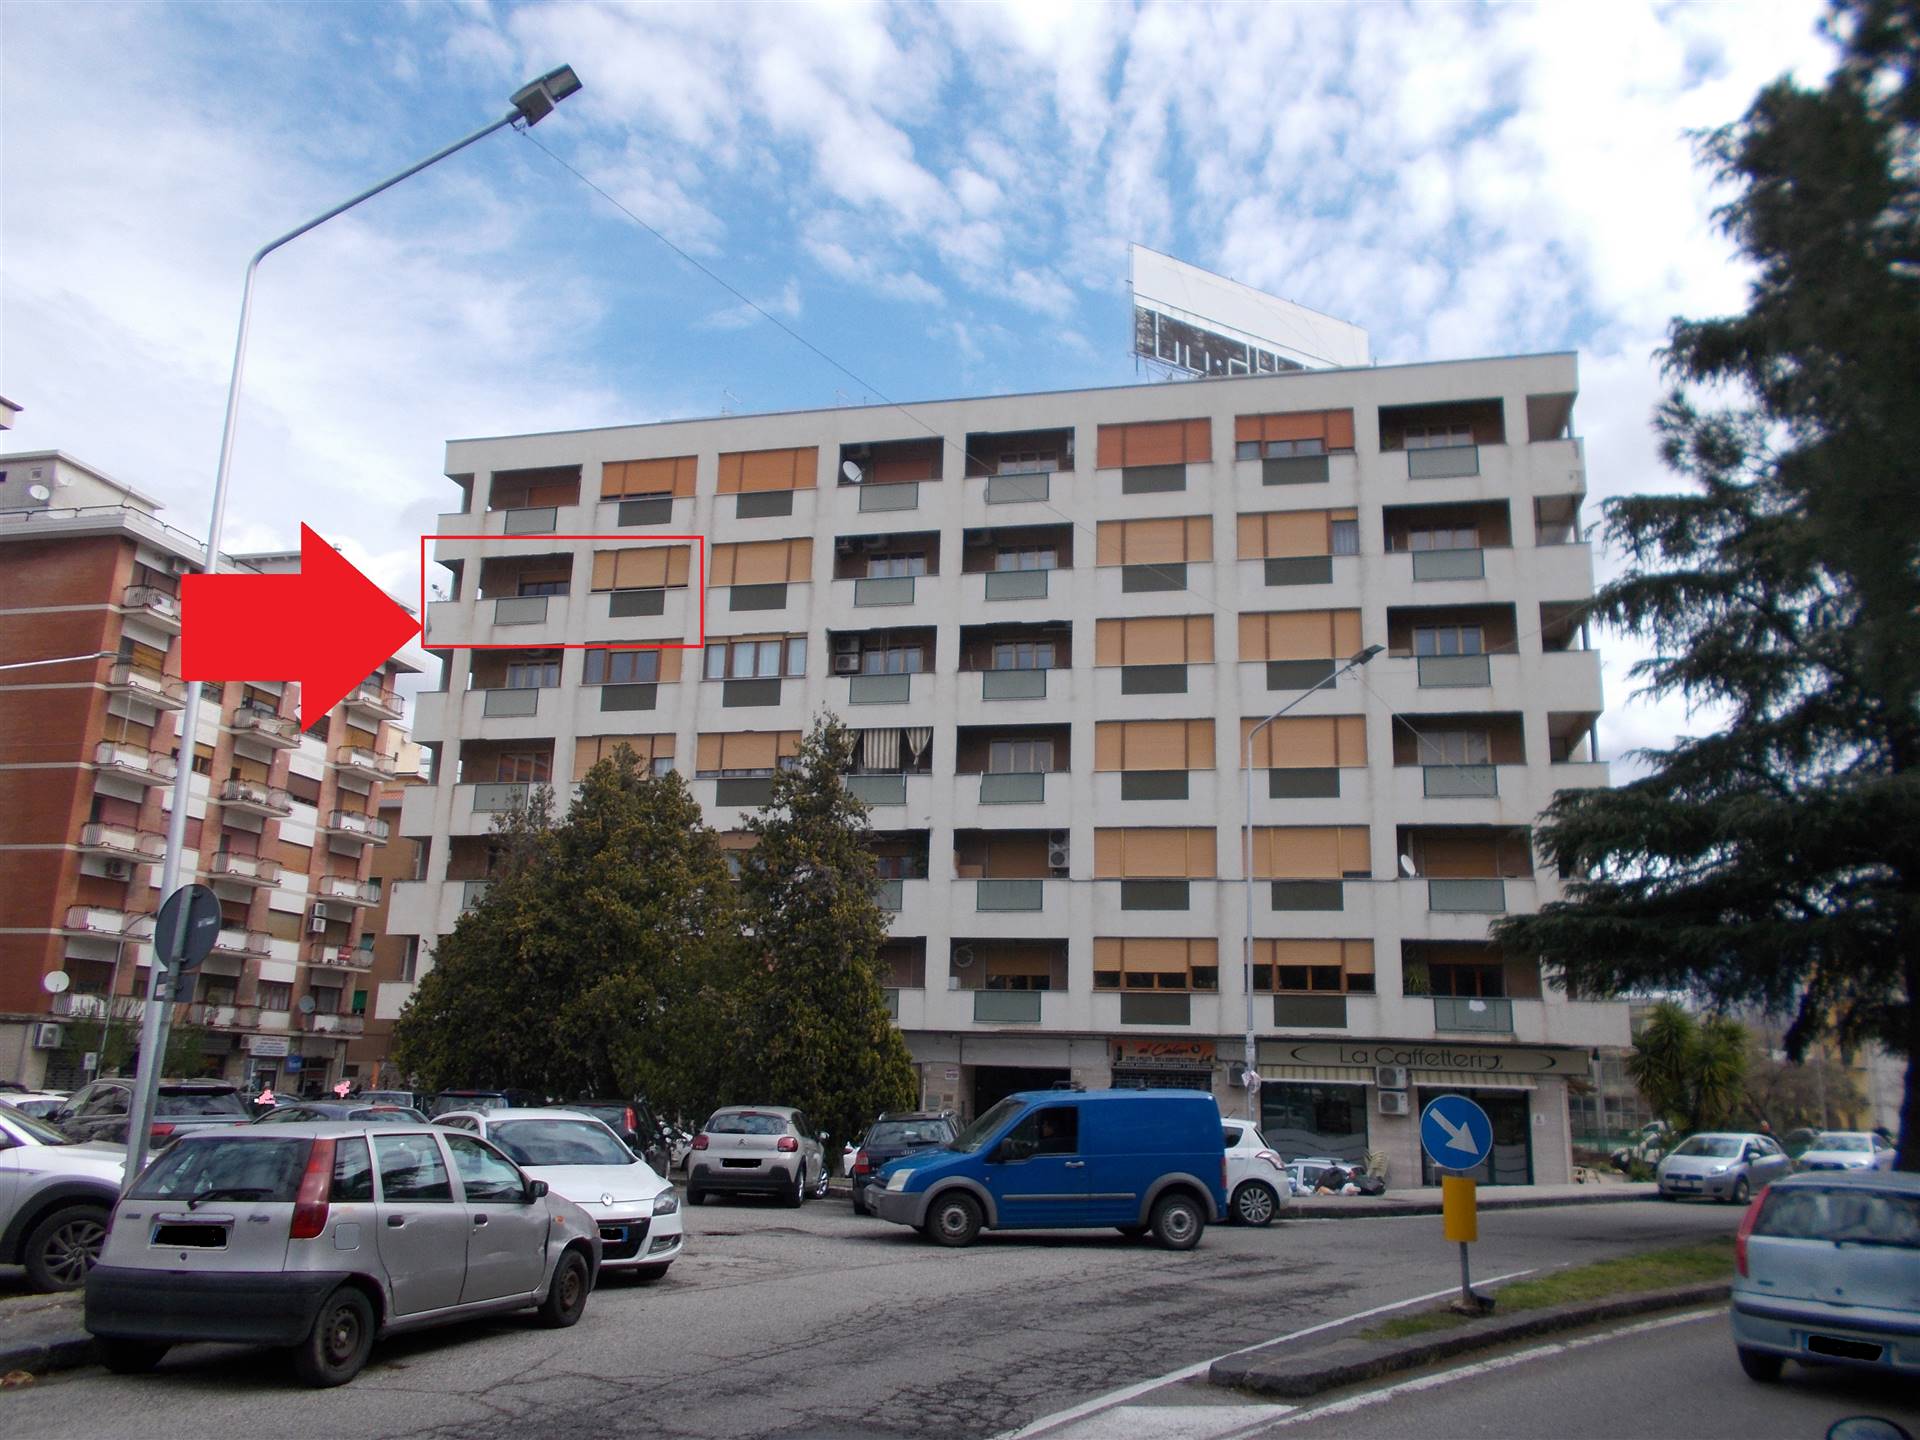 L’Agenzia Immobiliare Cosenza propone in vendita a Cosenza, di fronte la Clinica La Madonnina, appartamento di circa 110 mq oltre 10 mq di balcone, 